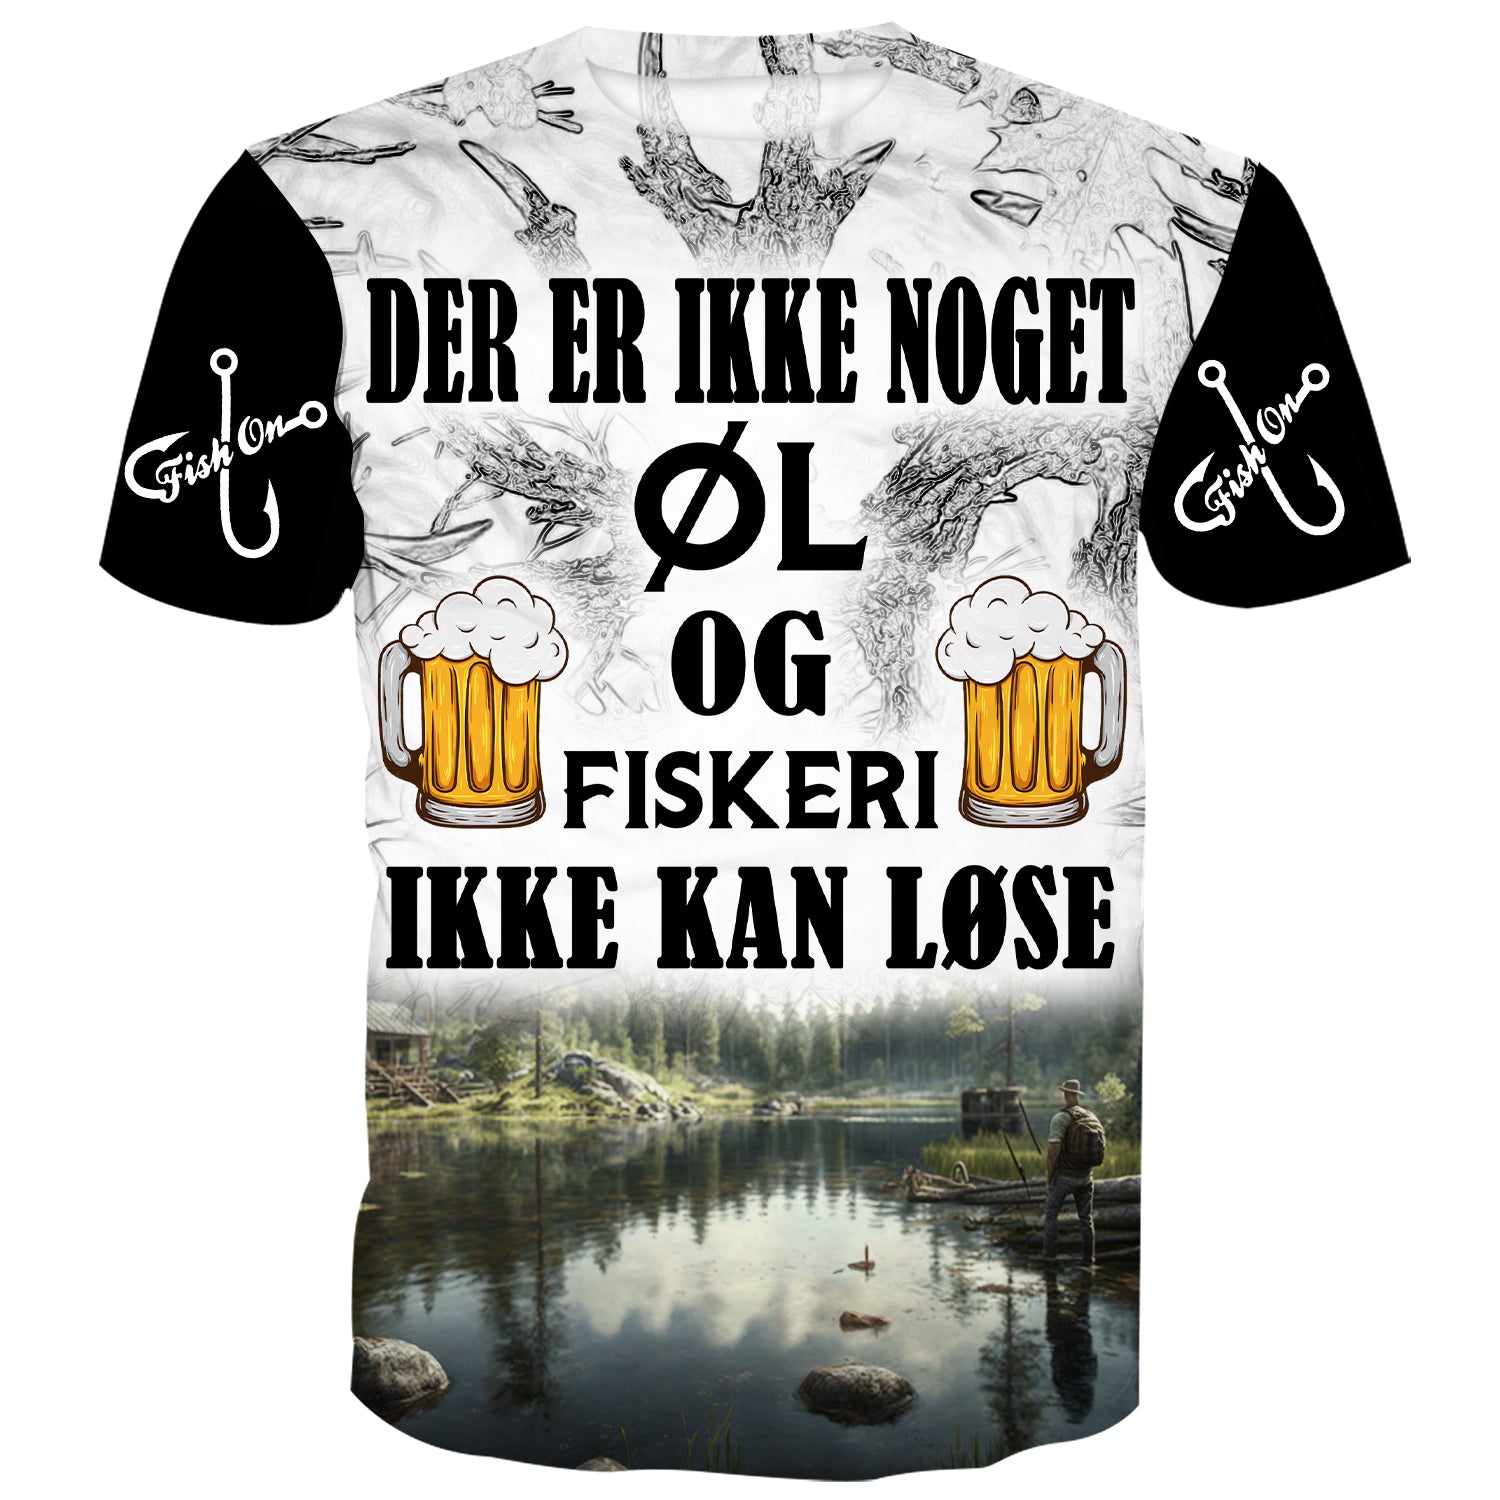 Sort t-shirt med tekst og grafik. Teksten lyder "Der er ikke noget øl og fiskeri ikke kan fixe". Grafikken viser en fisk, en fiskestang og en ølflaske. Baggrundsfarven er hvid.